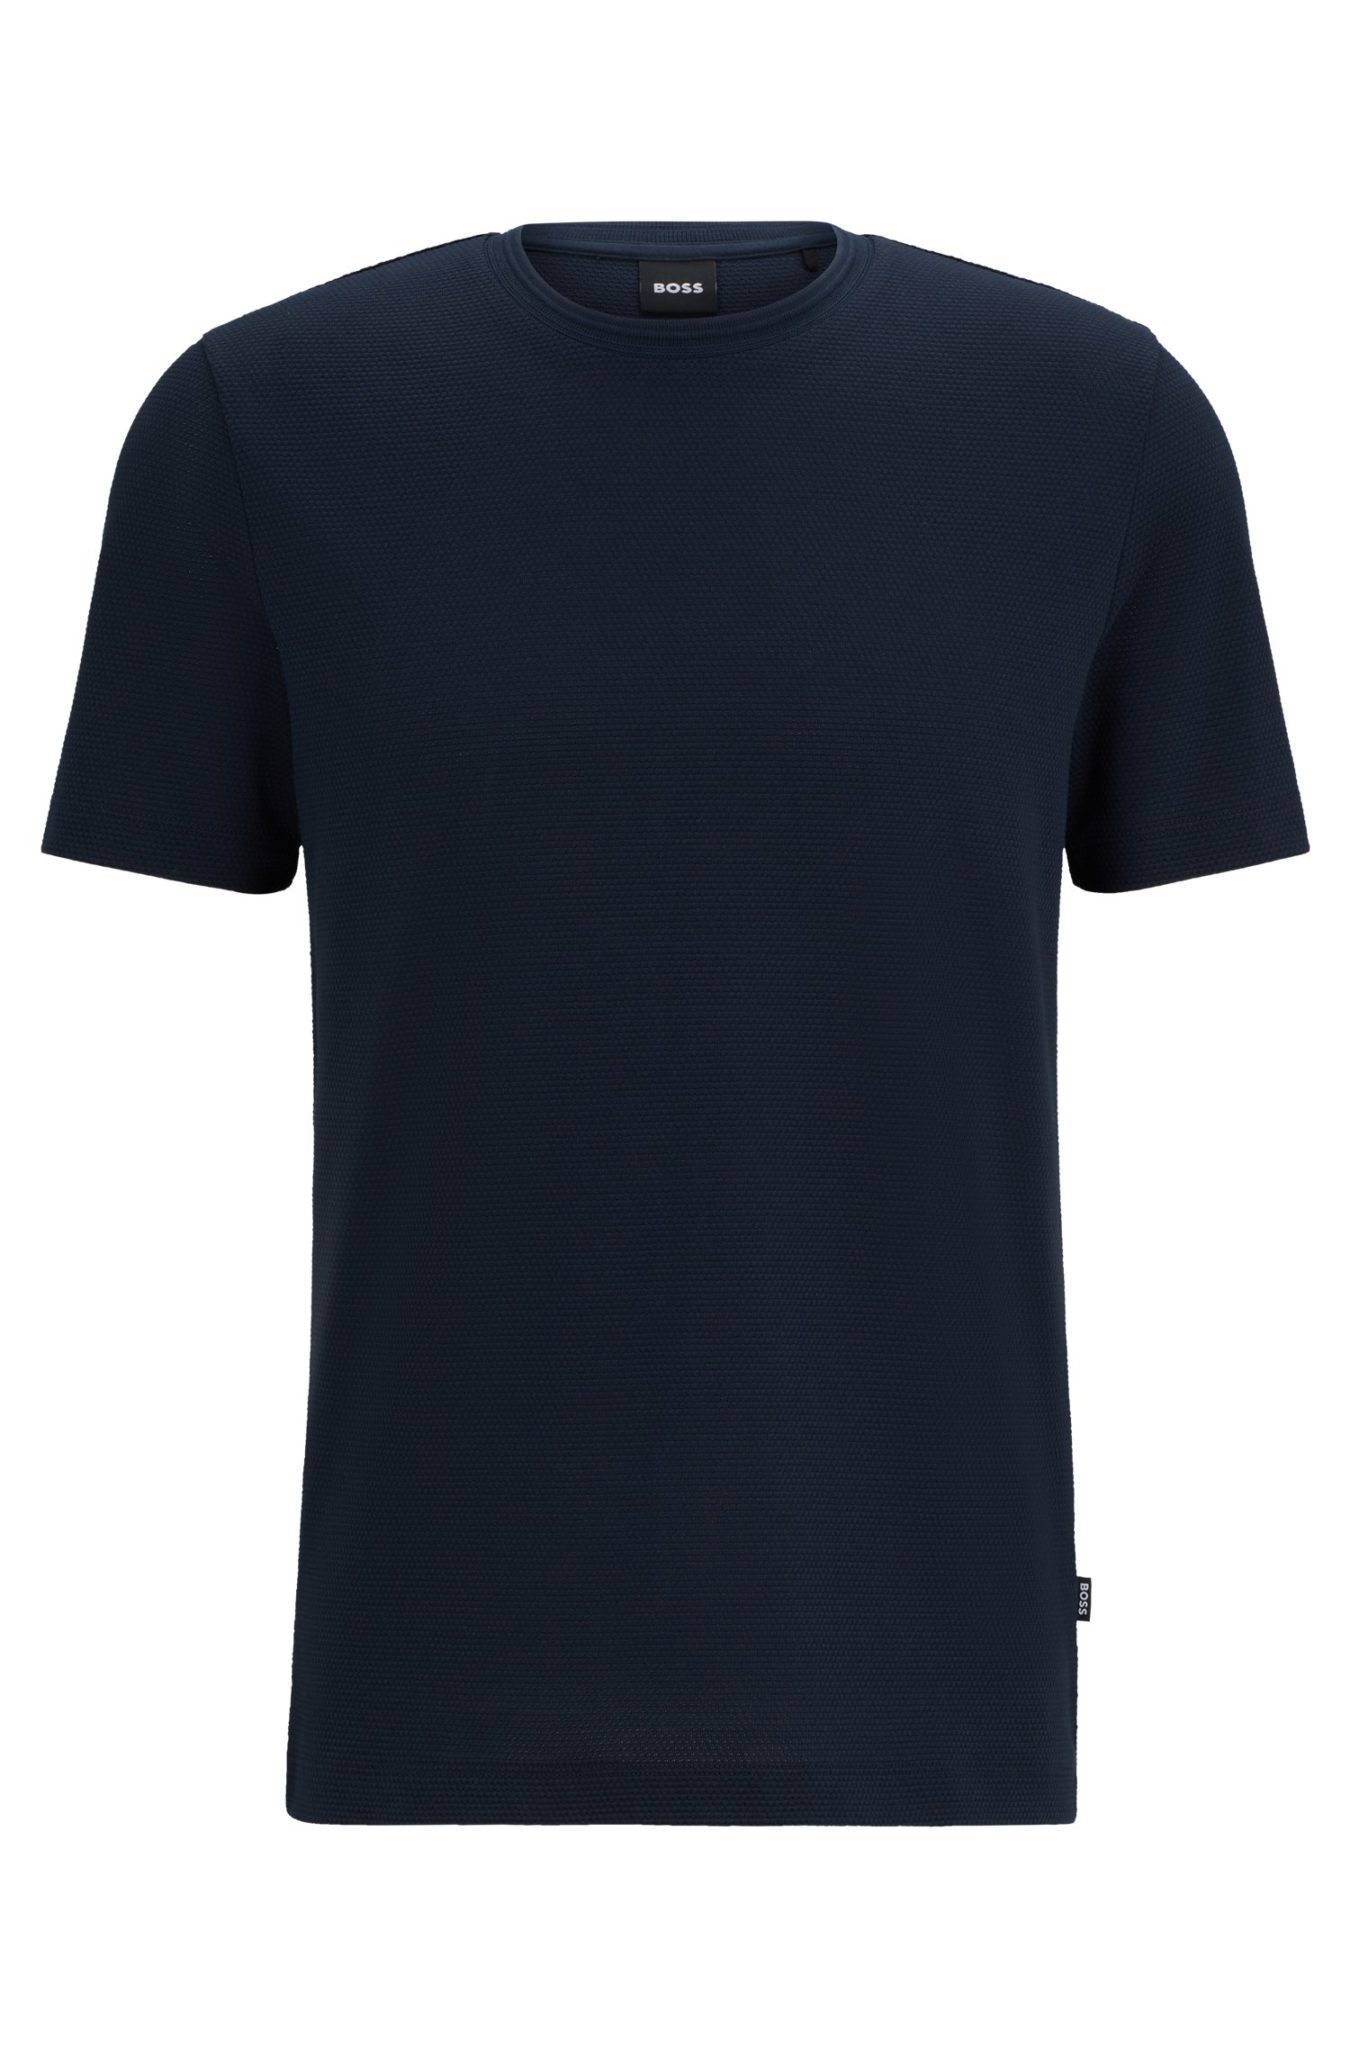 Hugo Boss T-shirt en coton mélangé à la structure jacquard effet bulle